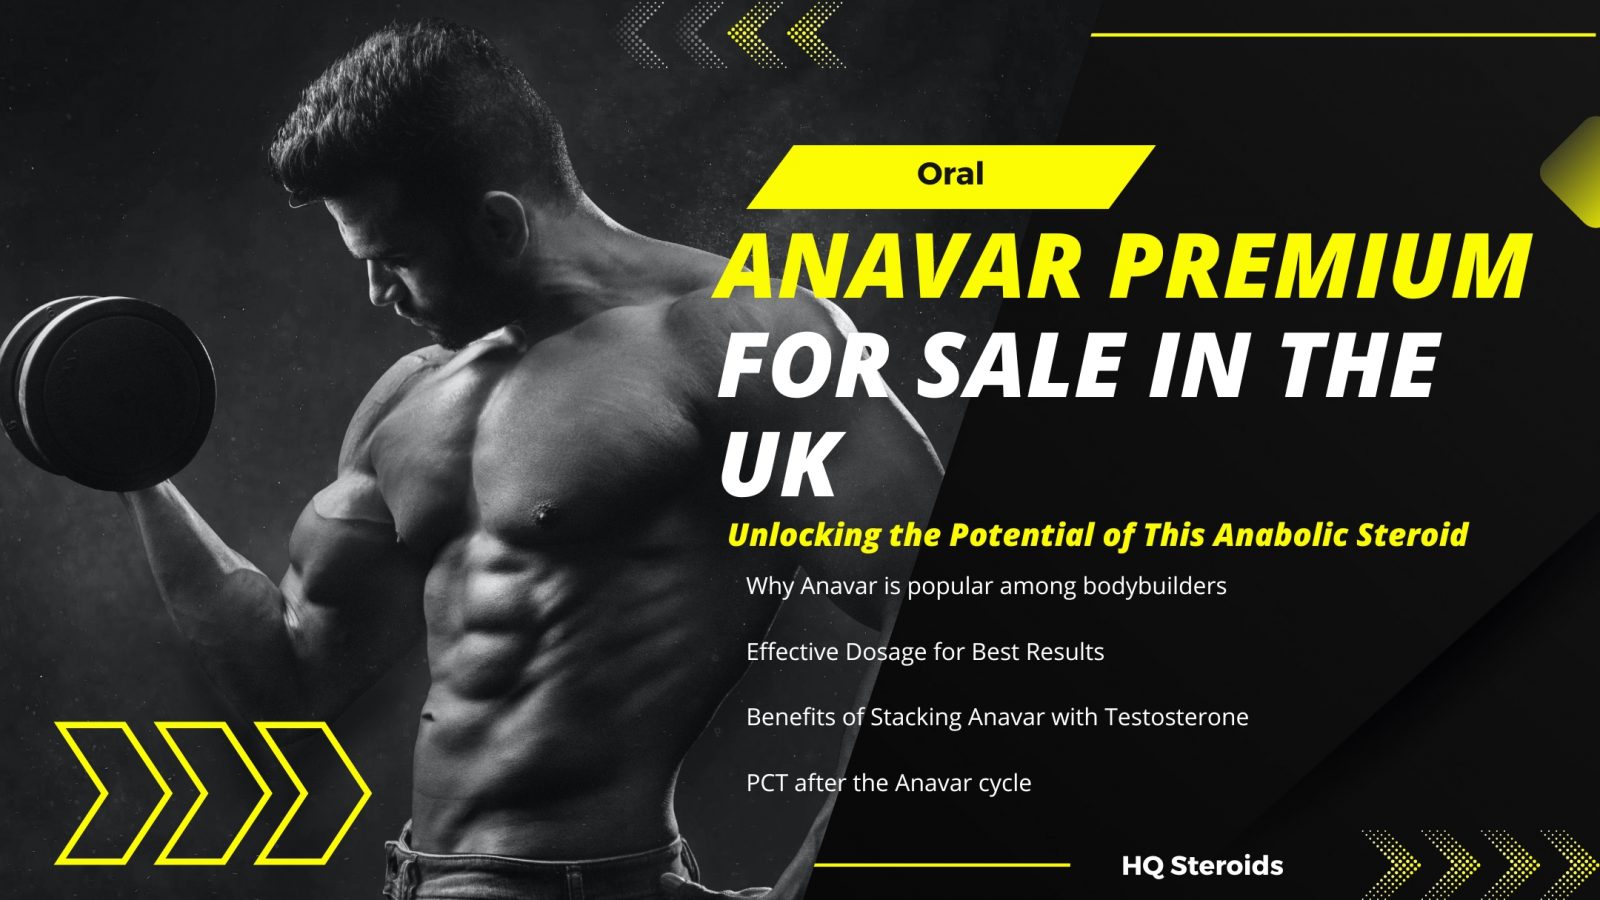 Premium Anavar for Sale in the UK